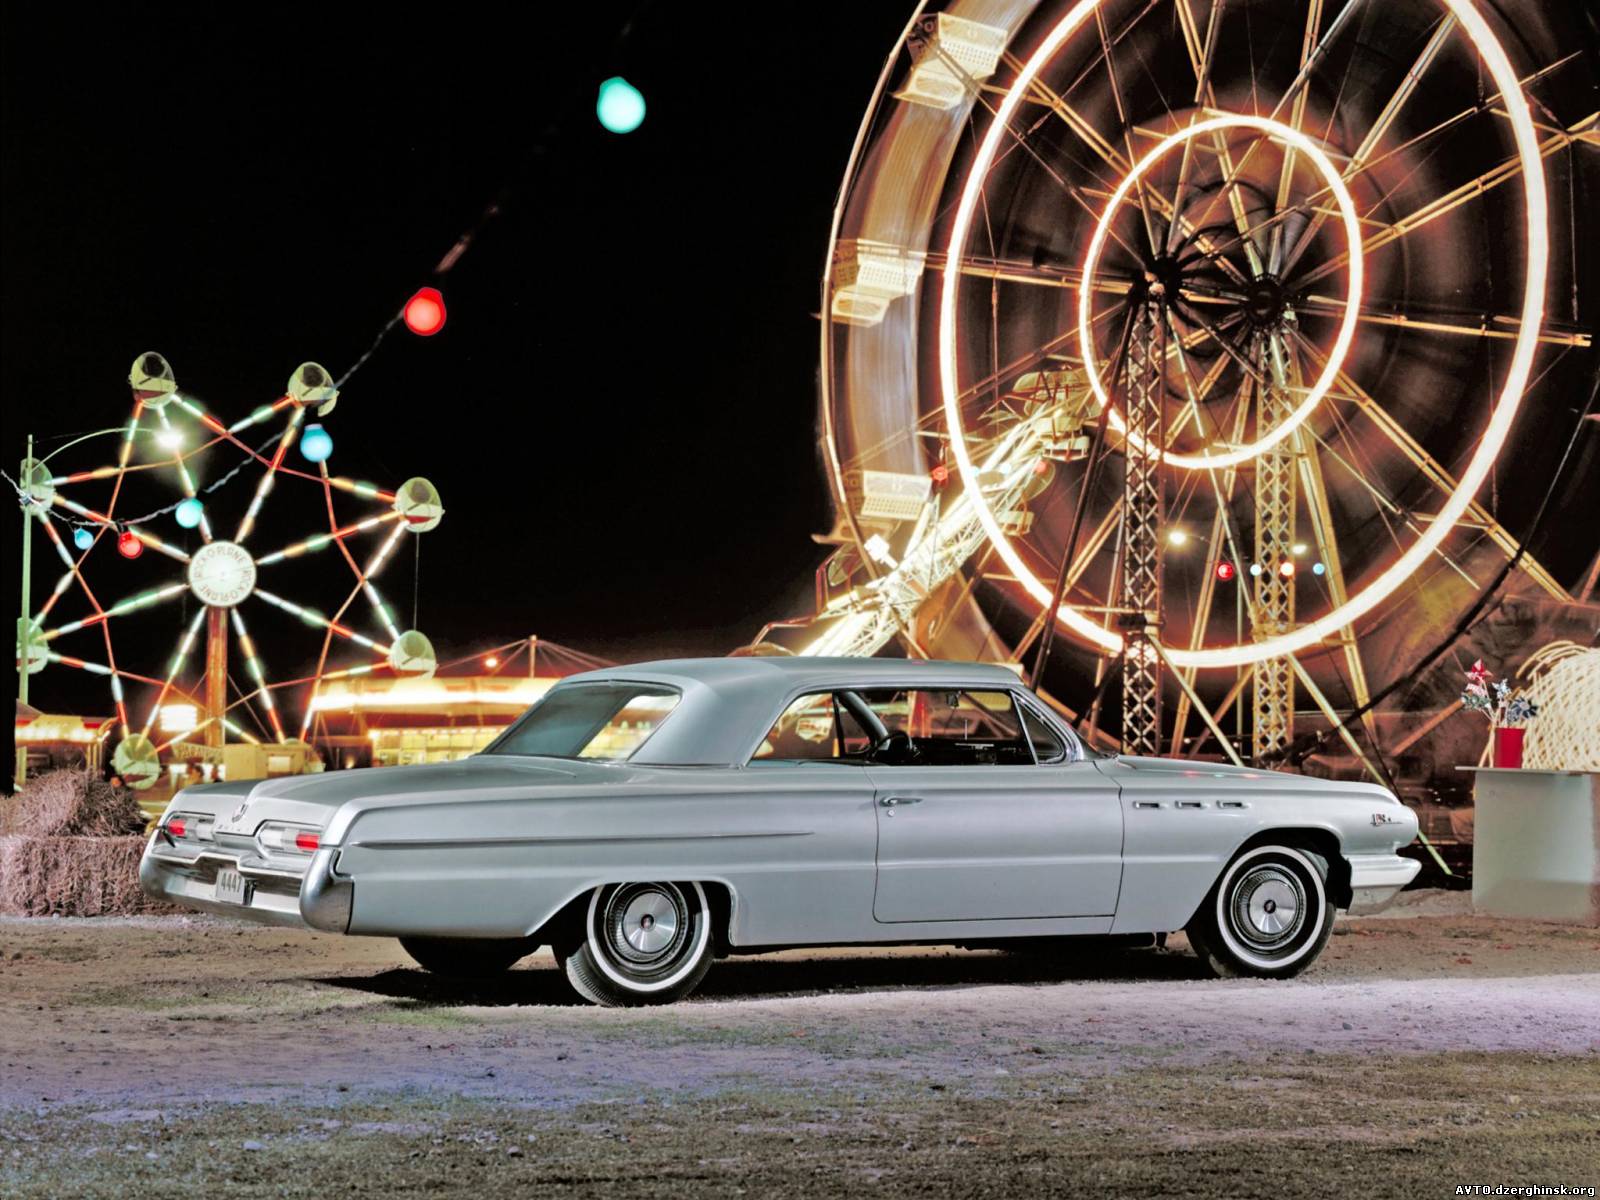 017. Buick LeSabre 1962